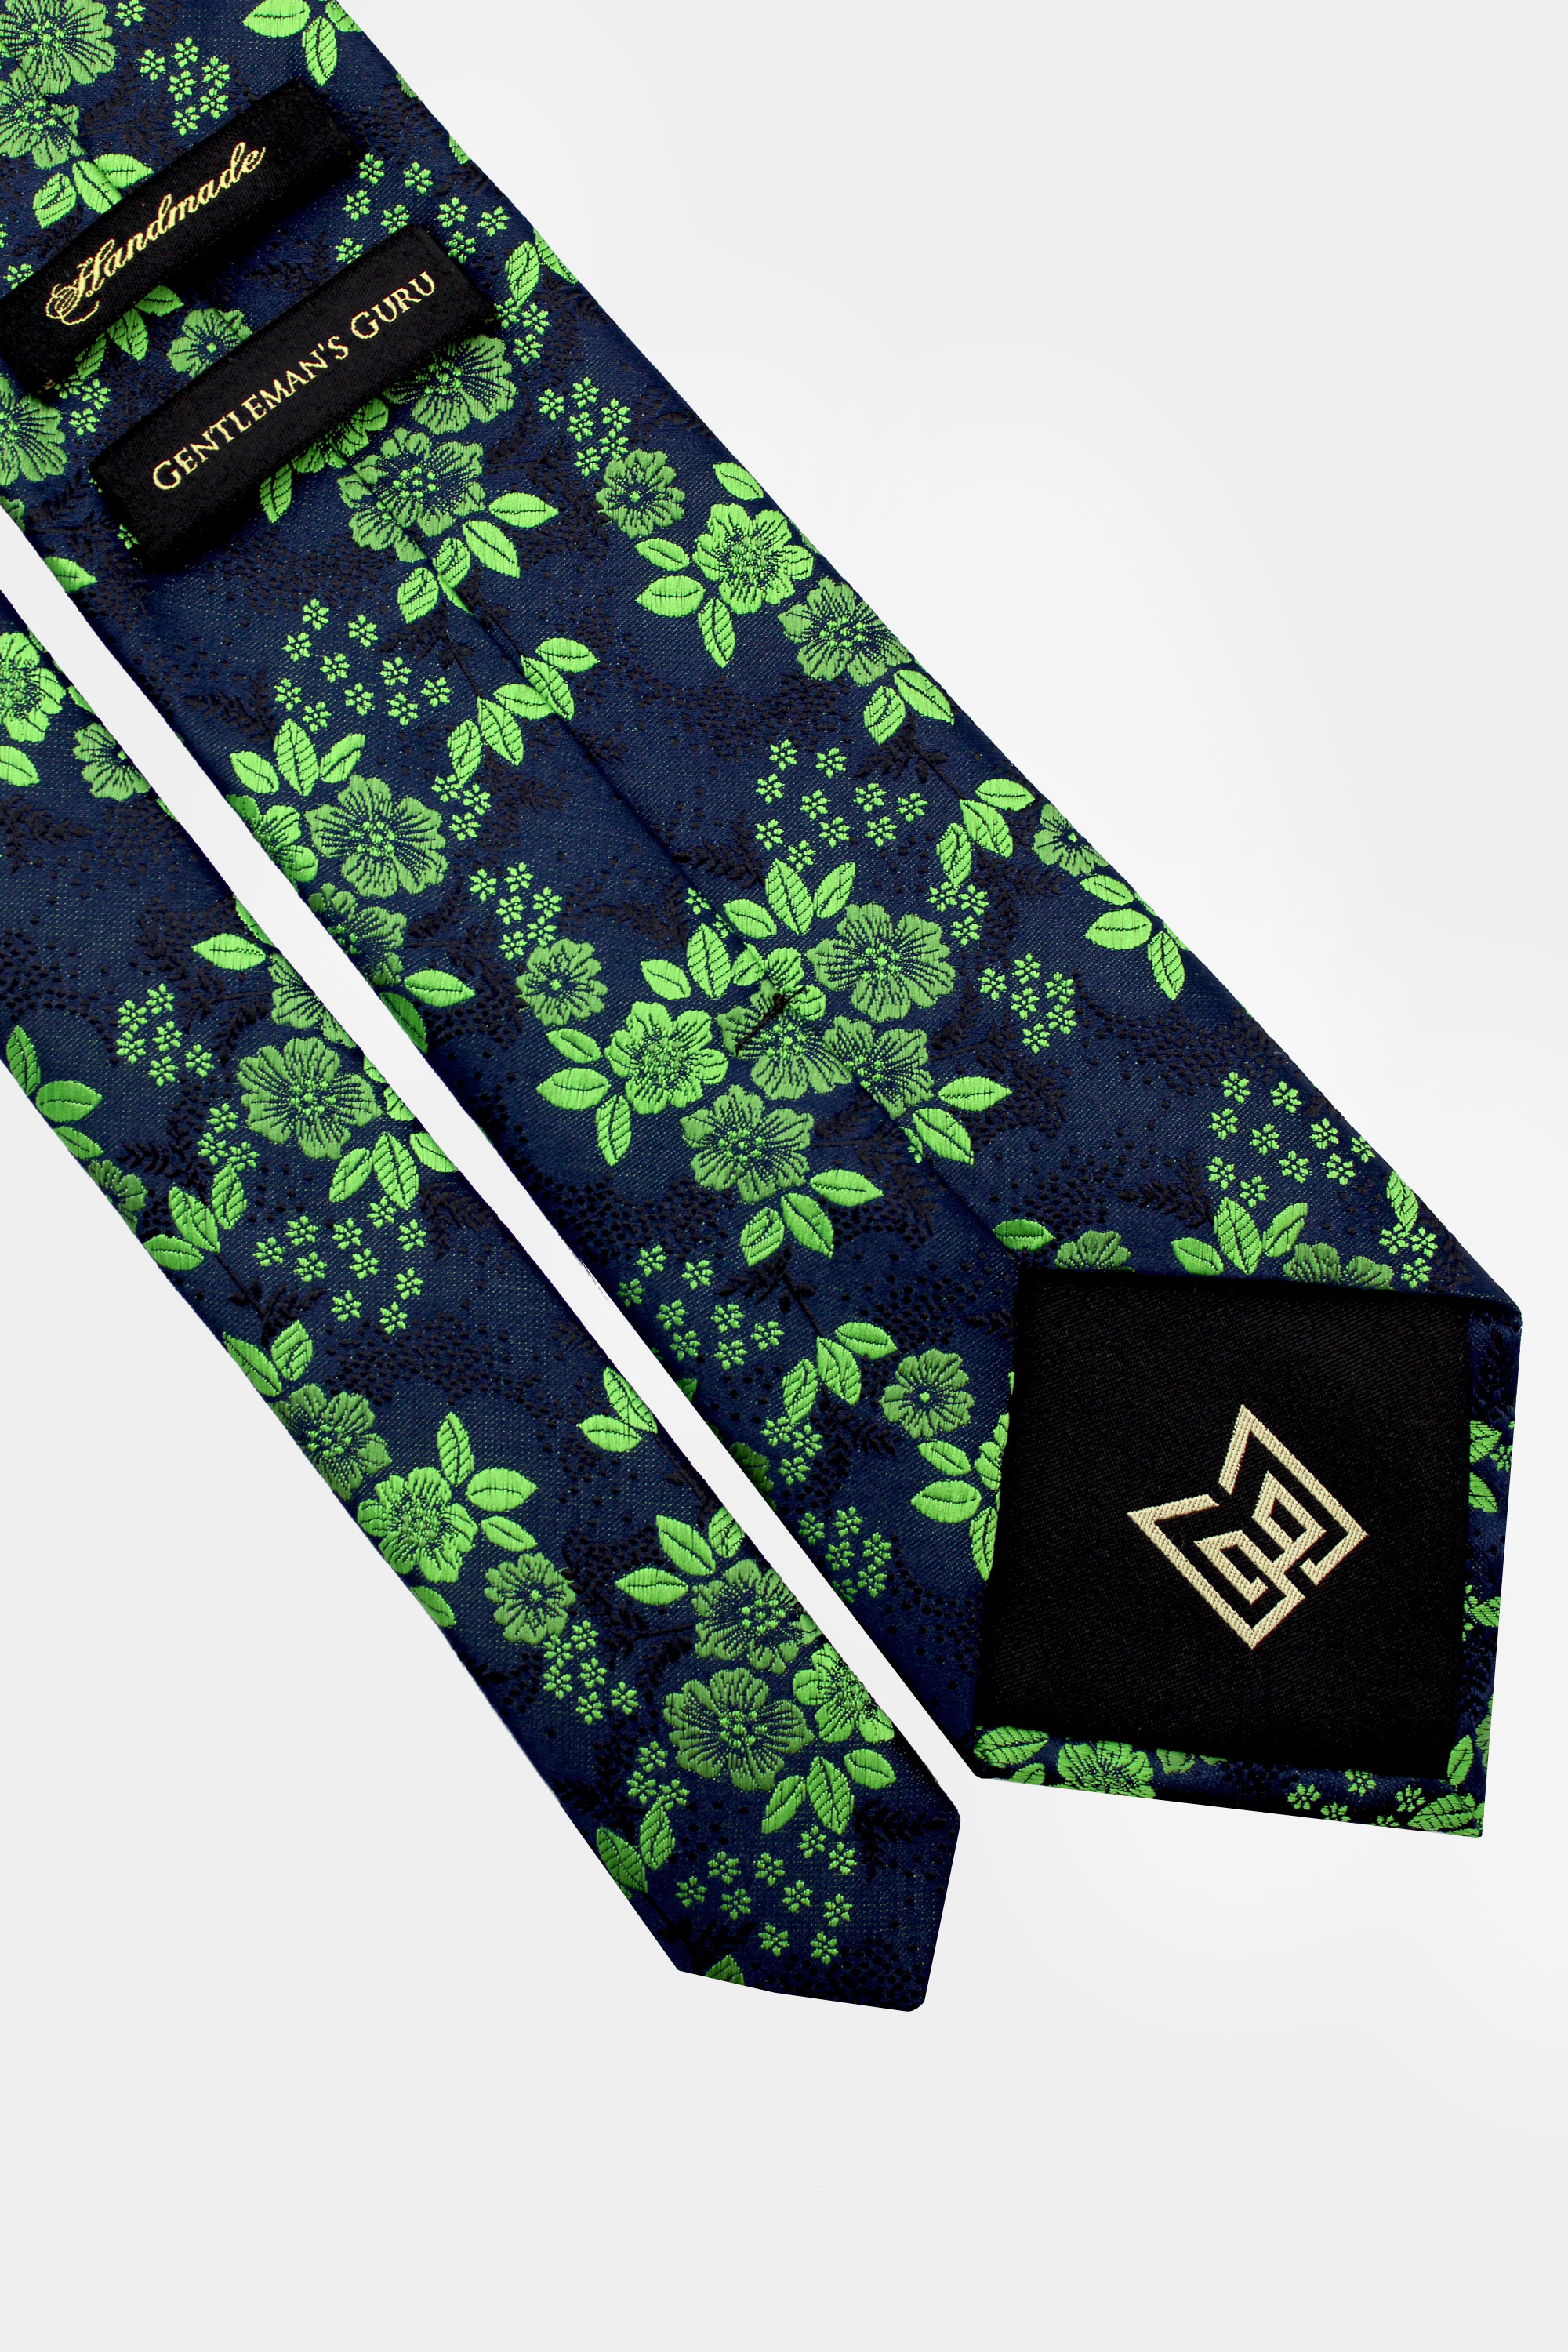 Green-Floral-Tie-from-Gentlemansguru.com